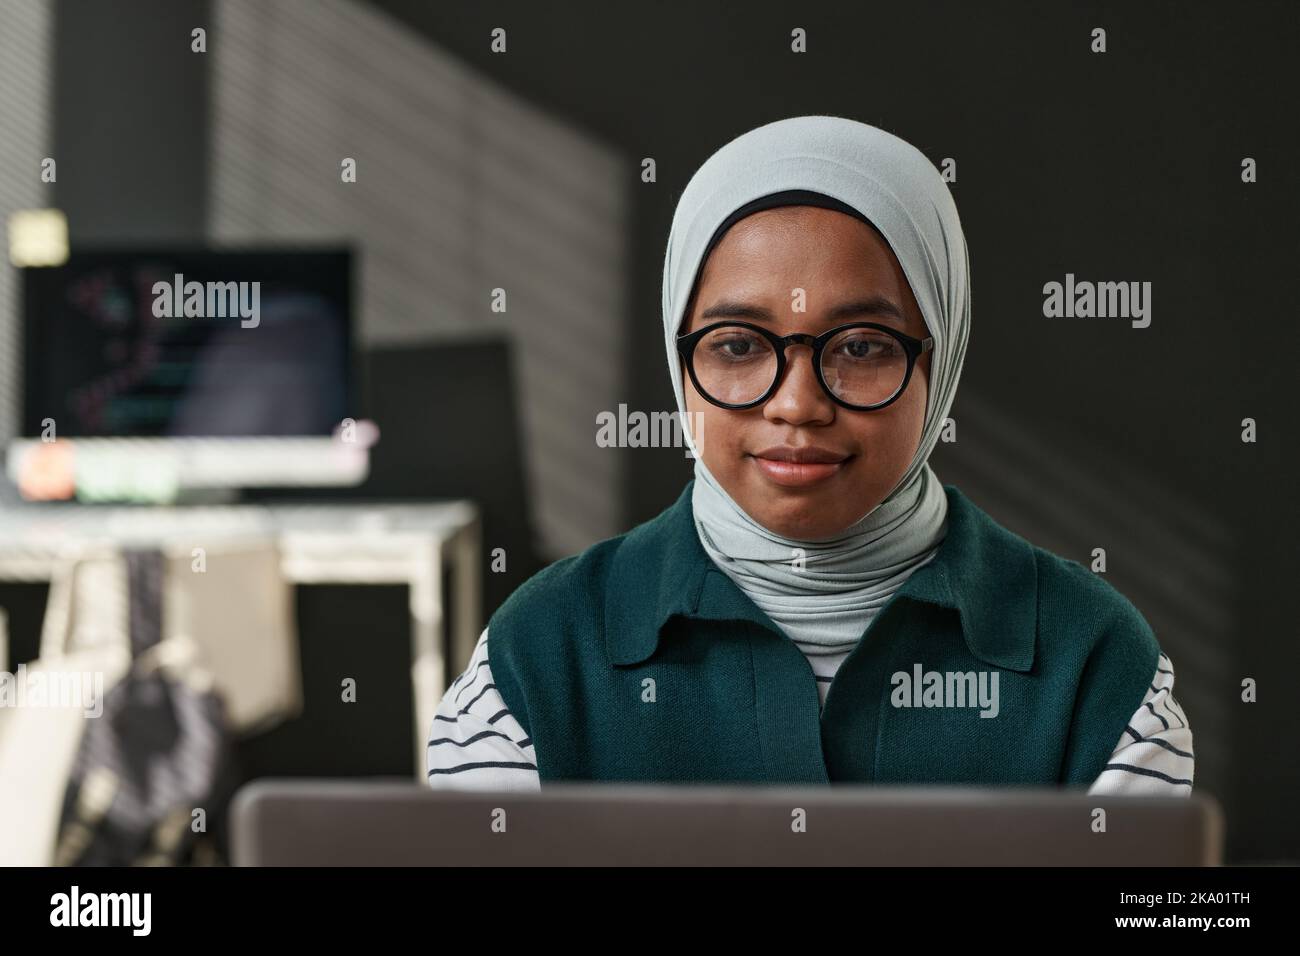 Junge IT-Support-Techniker in Casualwear, Brillen und Hijab sitzen vor dem Computermonitor und Networking im Büro Stockfoto